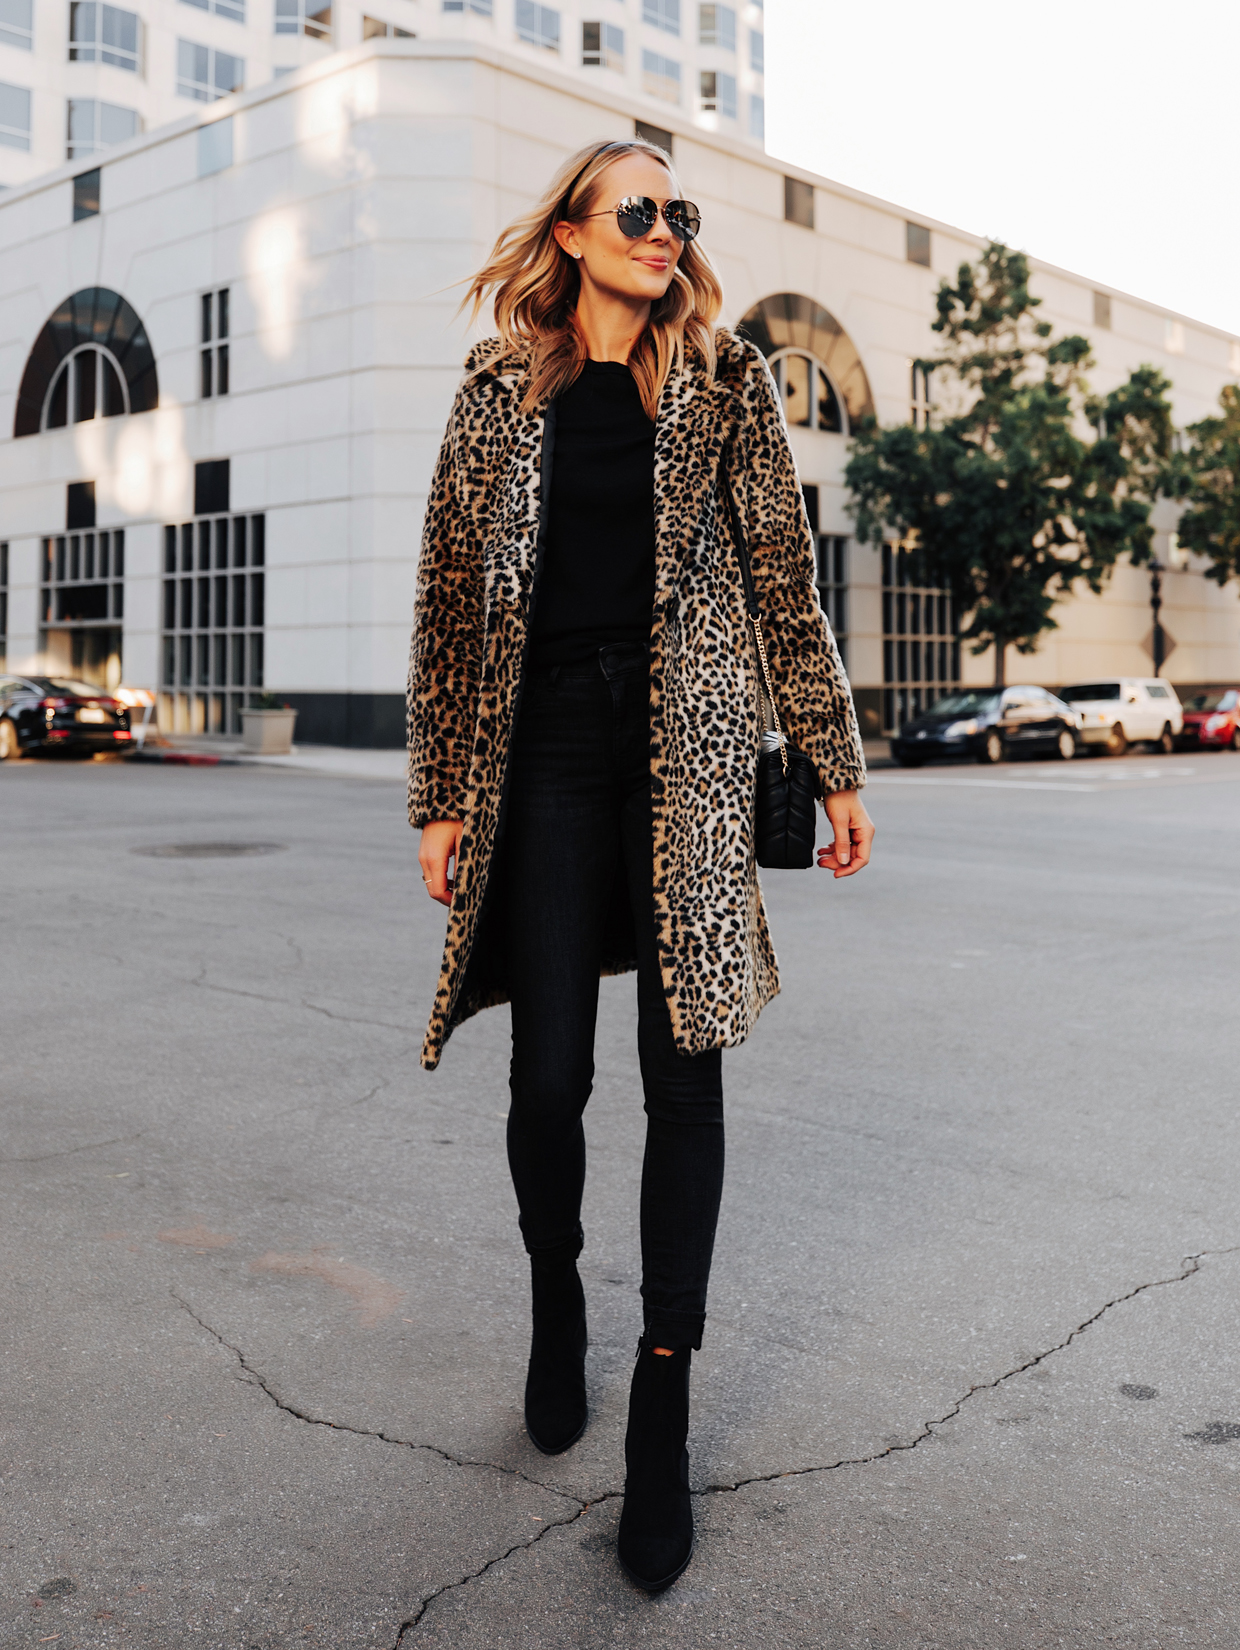 Leopard Faux Fur Statement Coat - Fashion Jackson